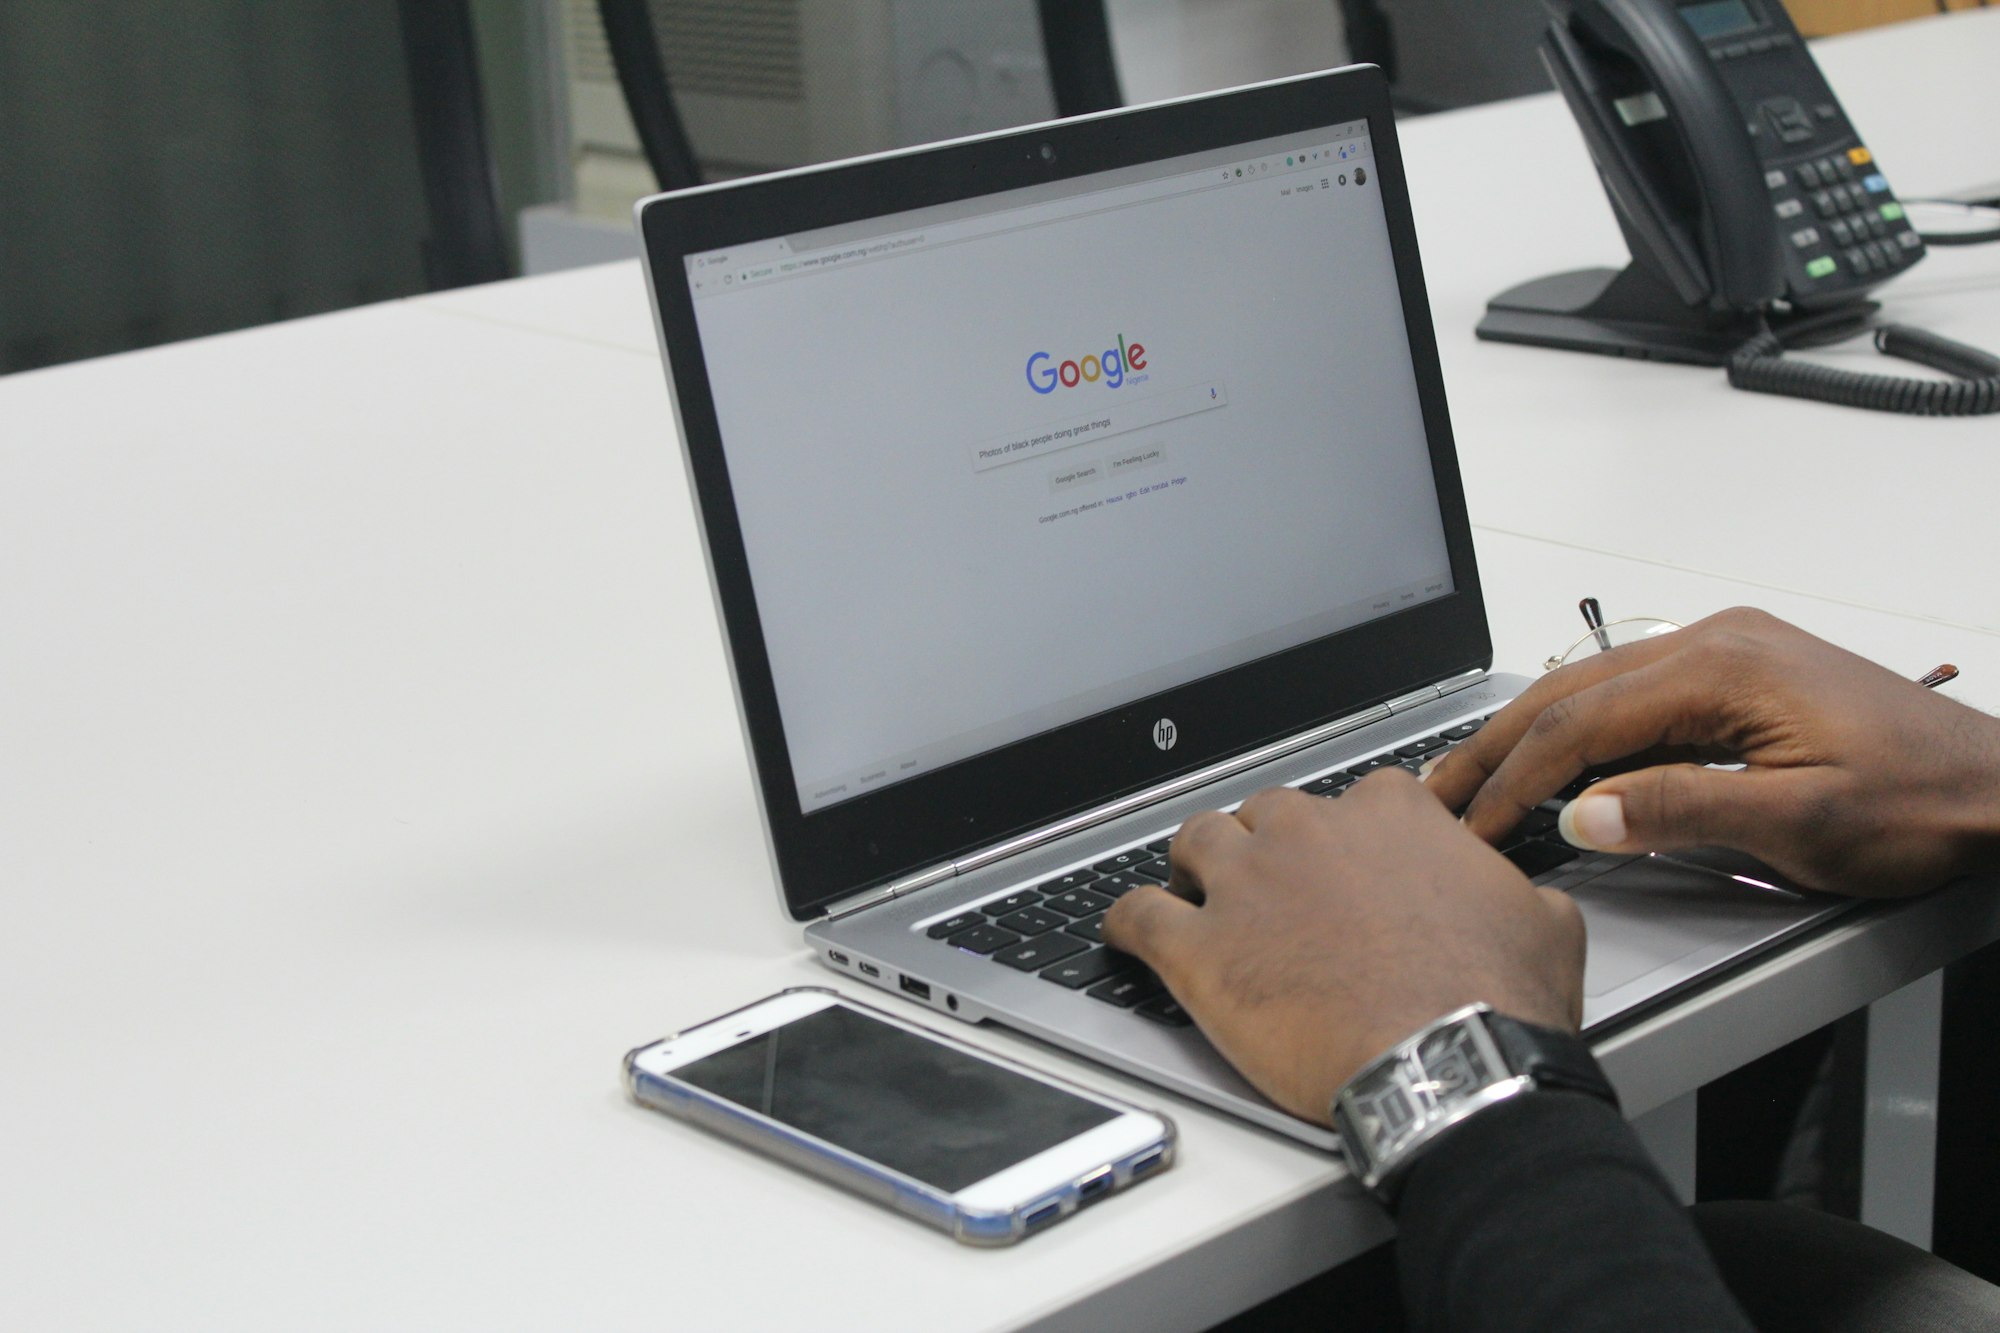 Persona usando Google Chrome en su ordenador HP.